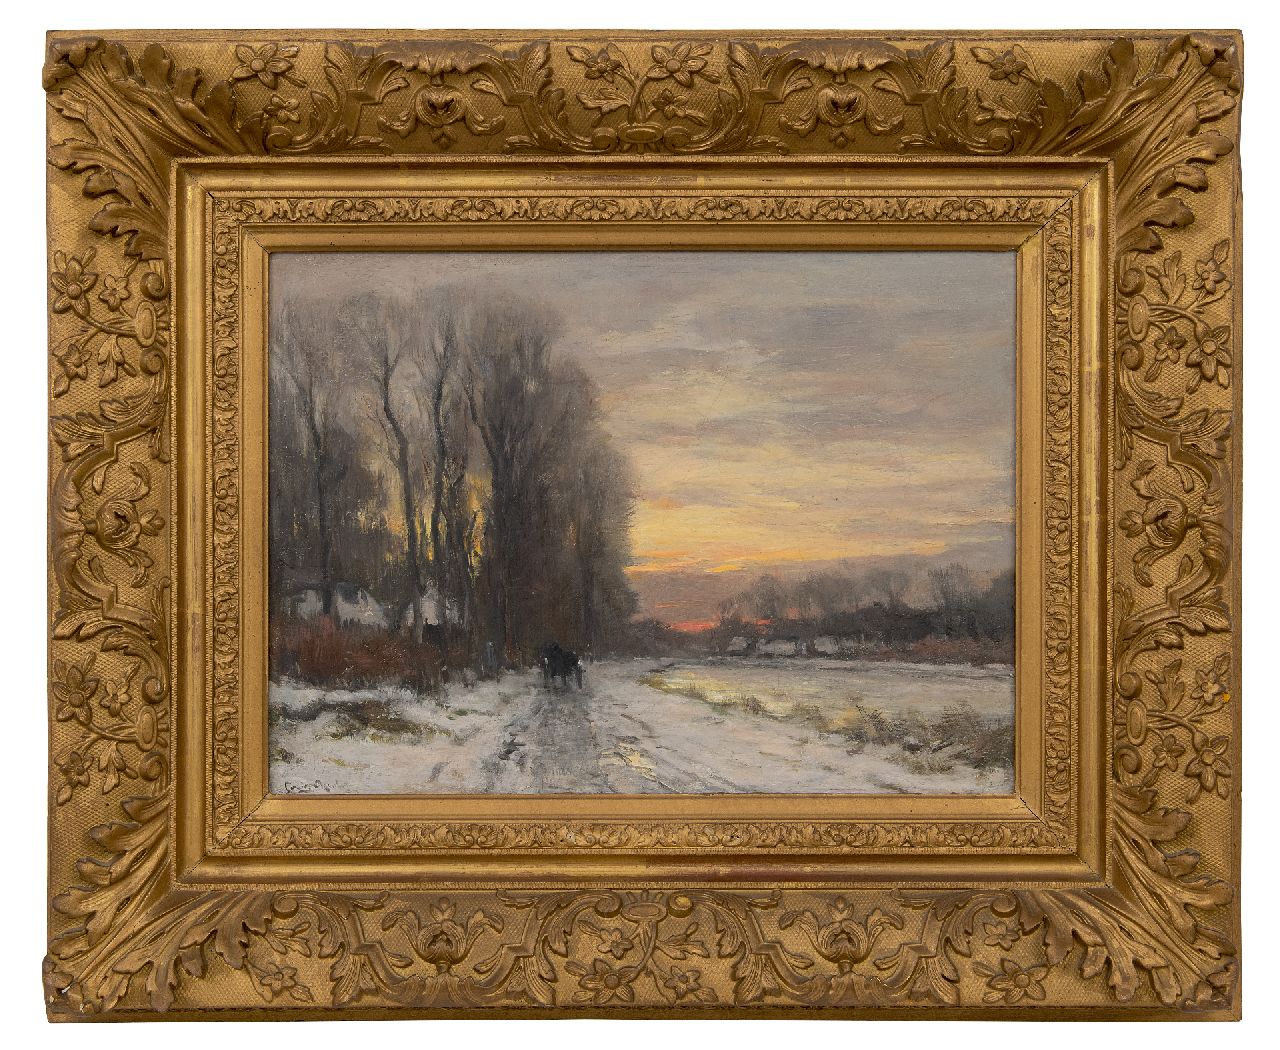 Apol L.F.H.  | Lodewijk Franciscus Hendrik 'Louis' Apol | Schilderijen te koop aangeboden | Sneeuwlandschap bij avond, olieverf op doek 31,5 x 42,4 cm, gesigneerd linksonder